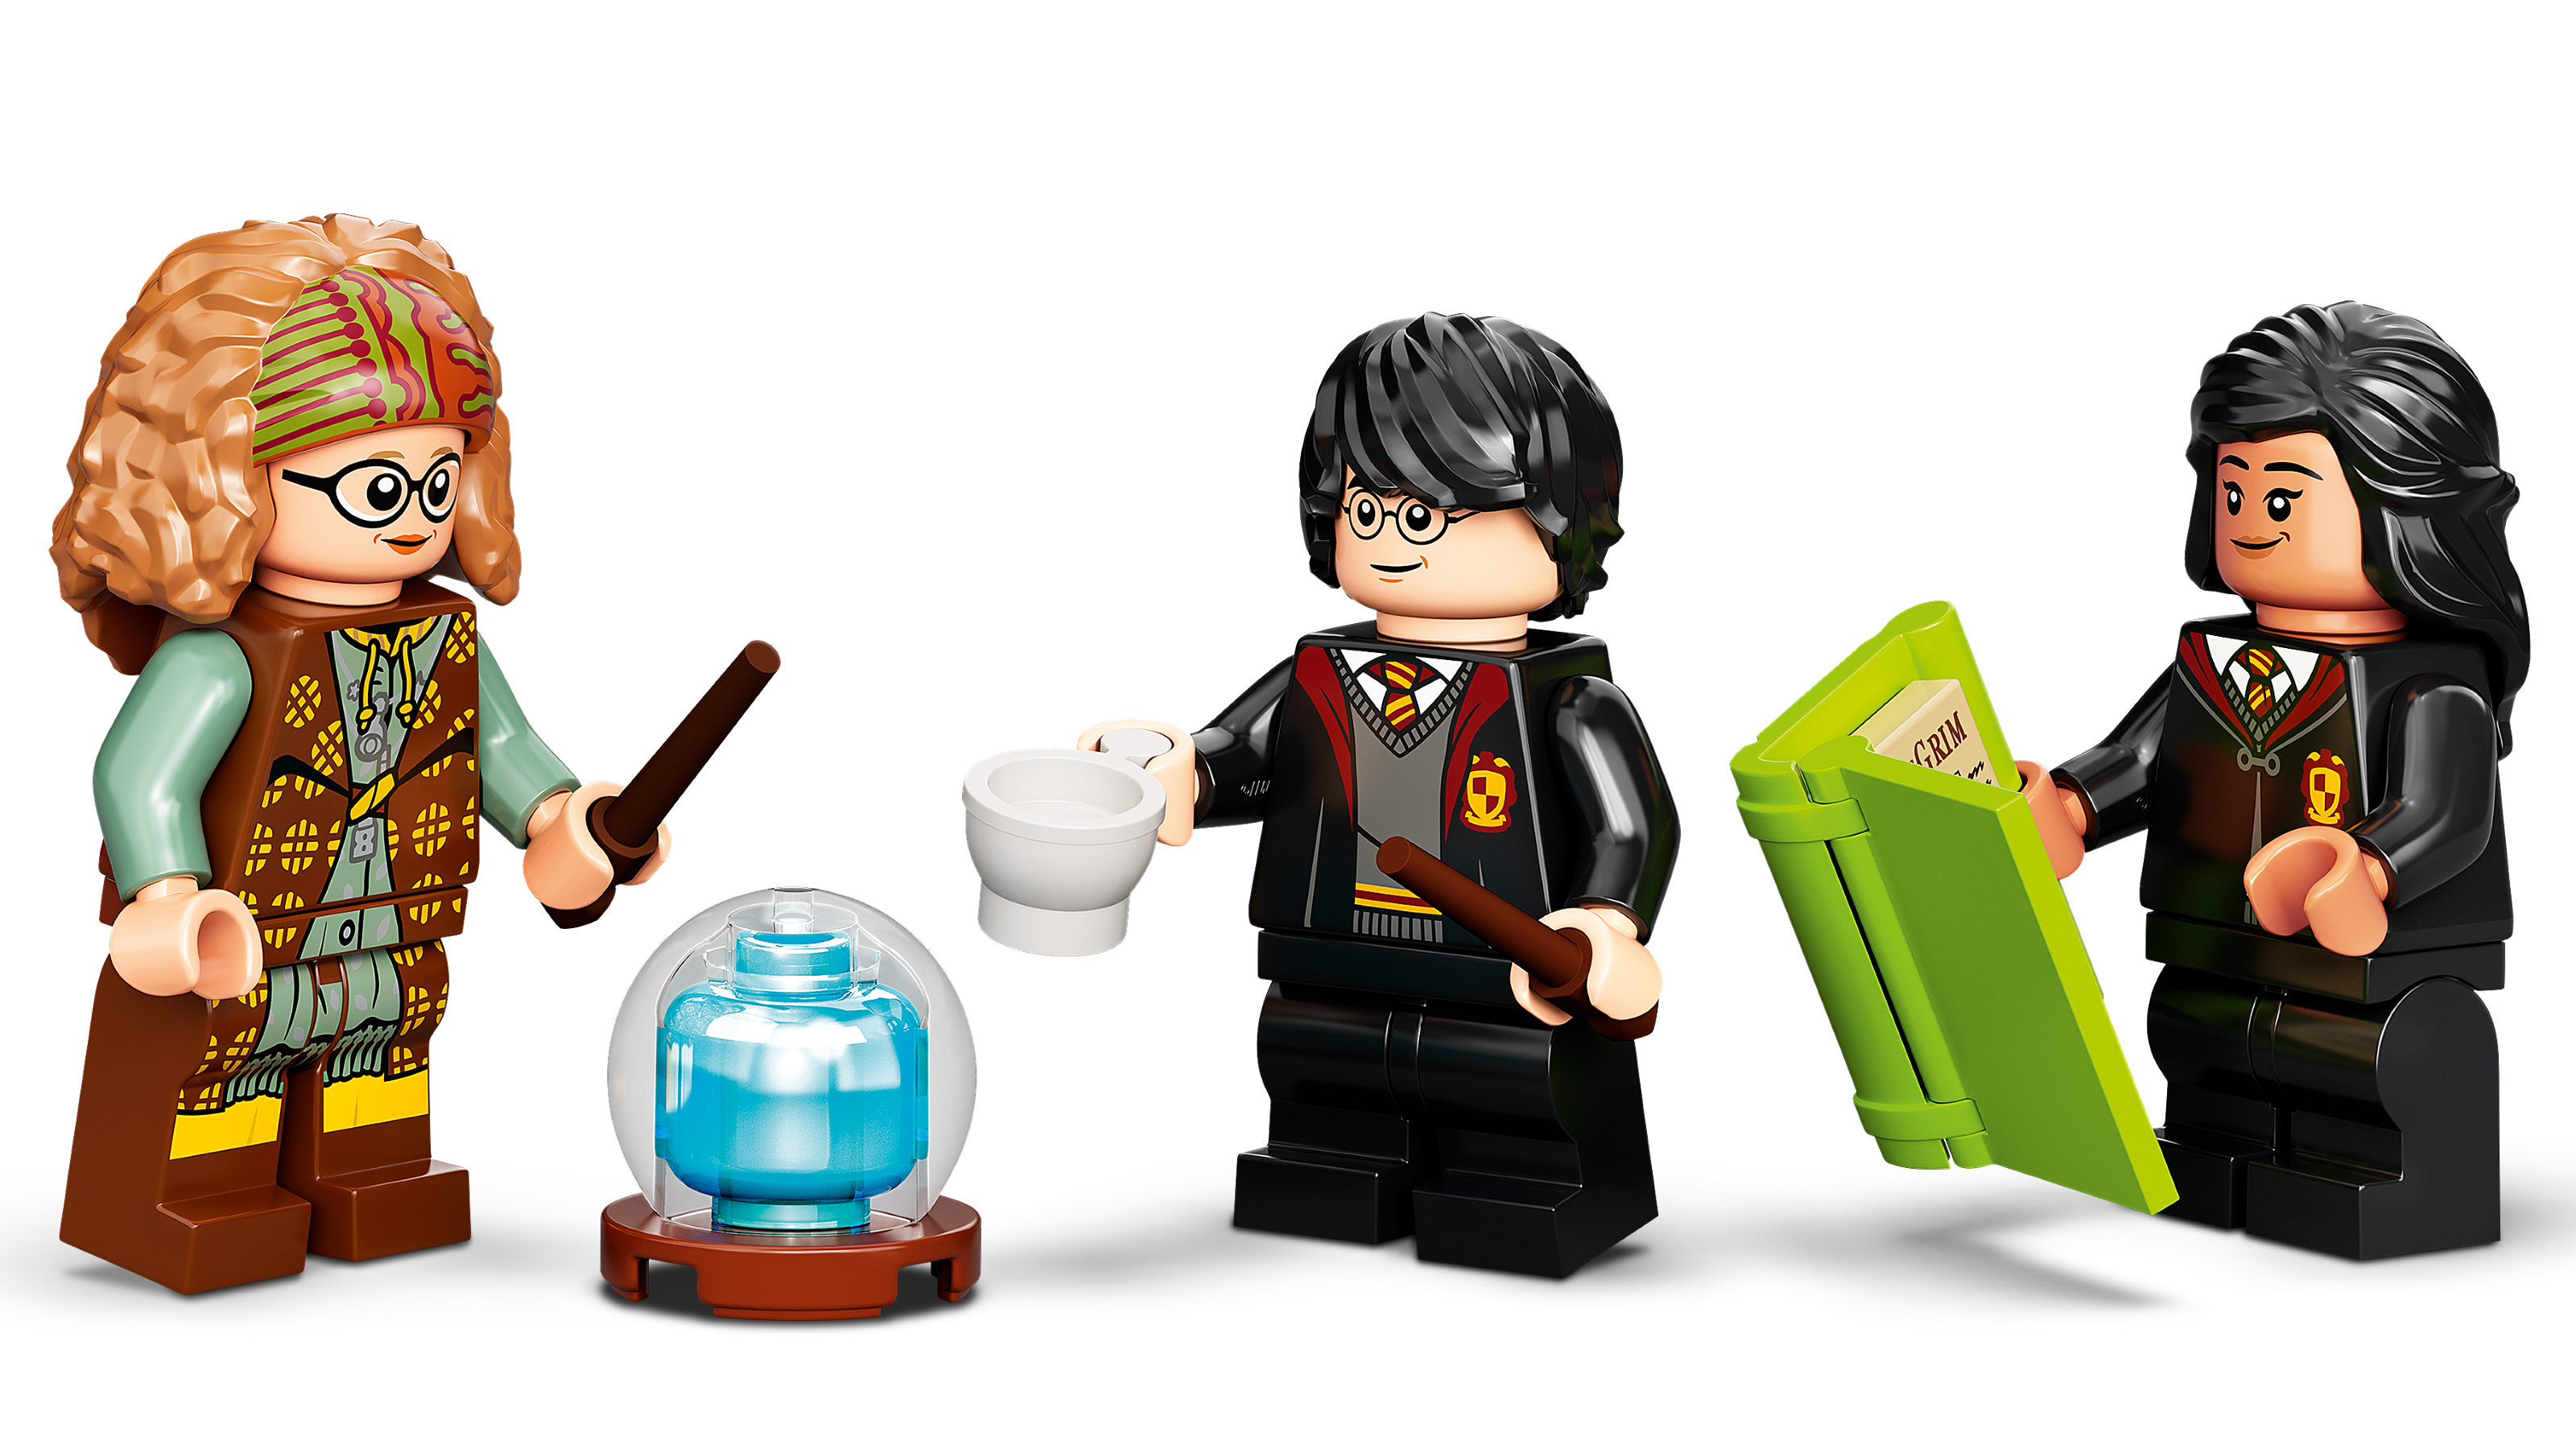 Nouveautés LEGO Harry Potter 2021 : les quatre livres Hogwarts Moment  sont en ligne - HOTH BRICKS